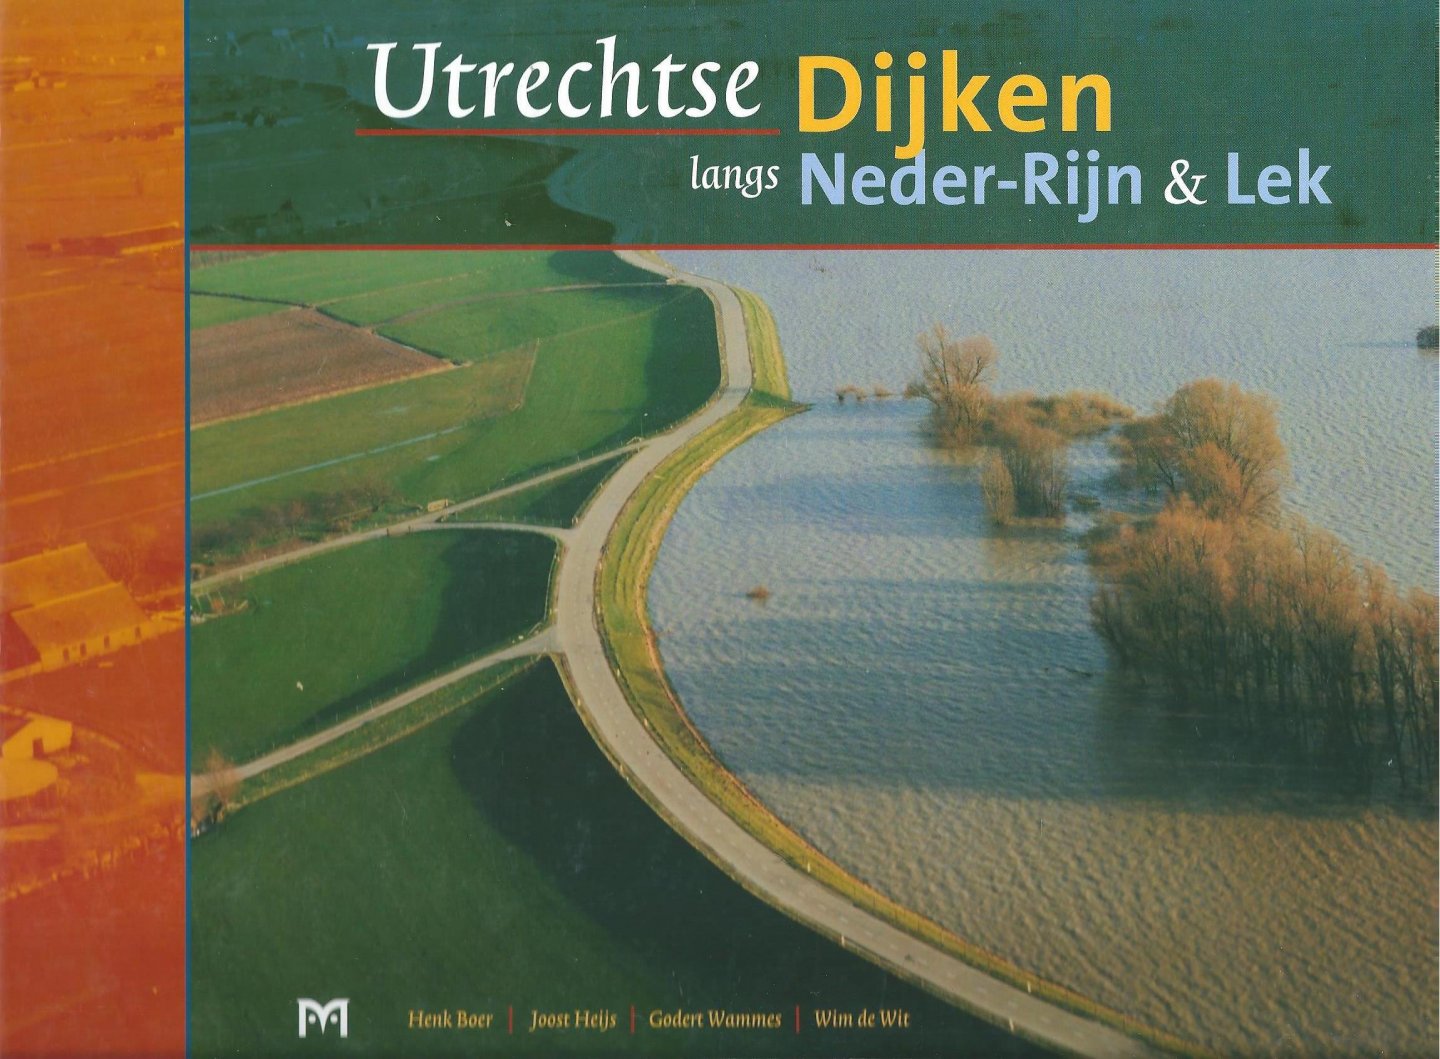 Boer, Henk ... [et al.] - Utrechtse dijken langs Neder-Rijn & Lek